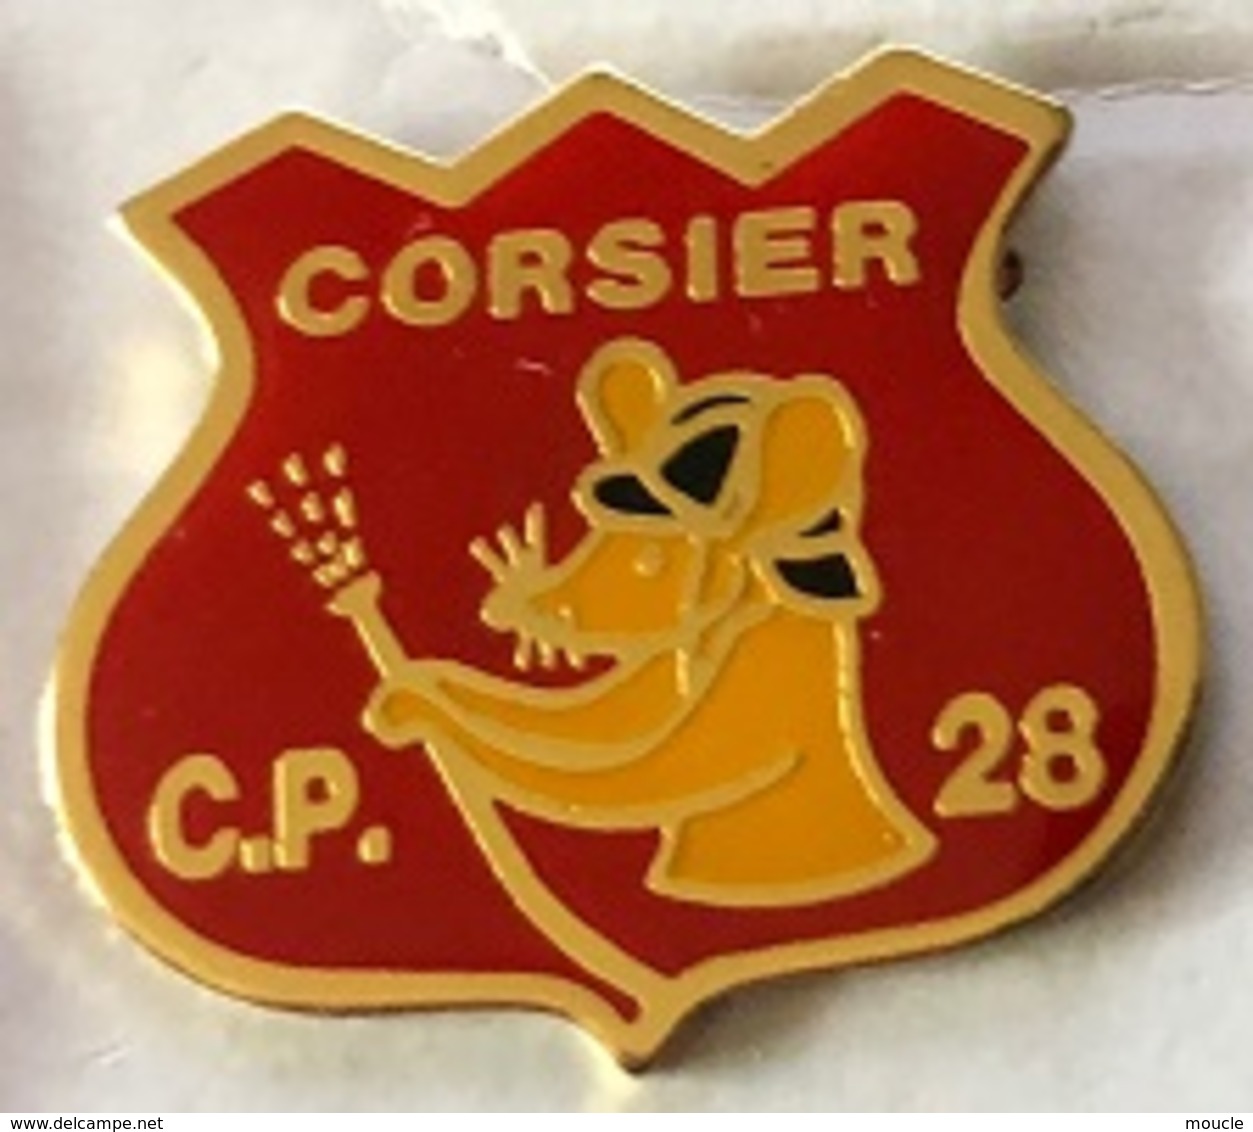 SAPEURS POMPIERS - CORSIER - GENEVE - C.P. 28 - SOURIS - RAT - GENEVA - GENF - GINERVA - SUISSE - SCHWEIZ-   (25) - Feuerwehr